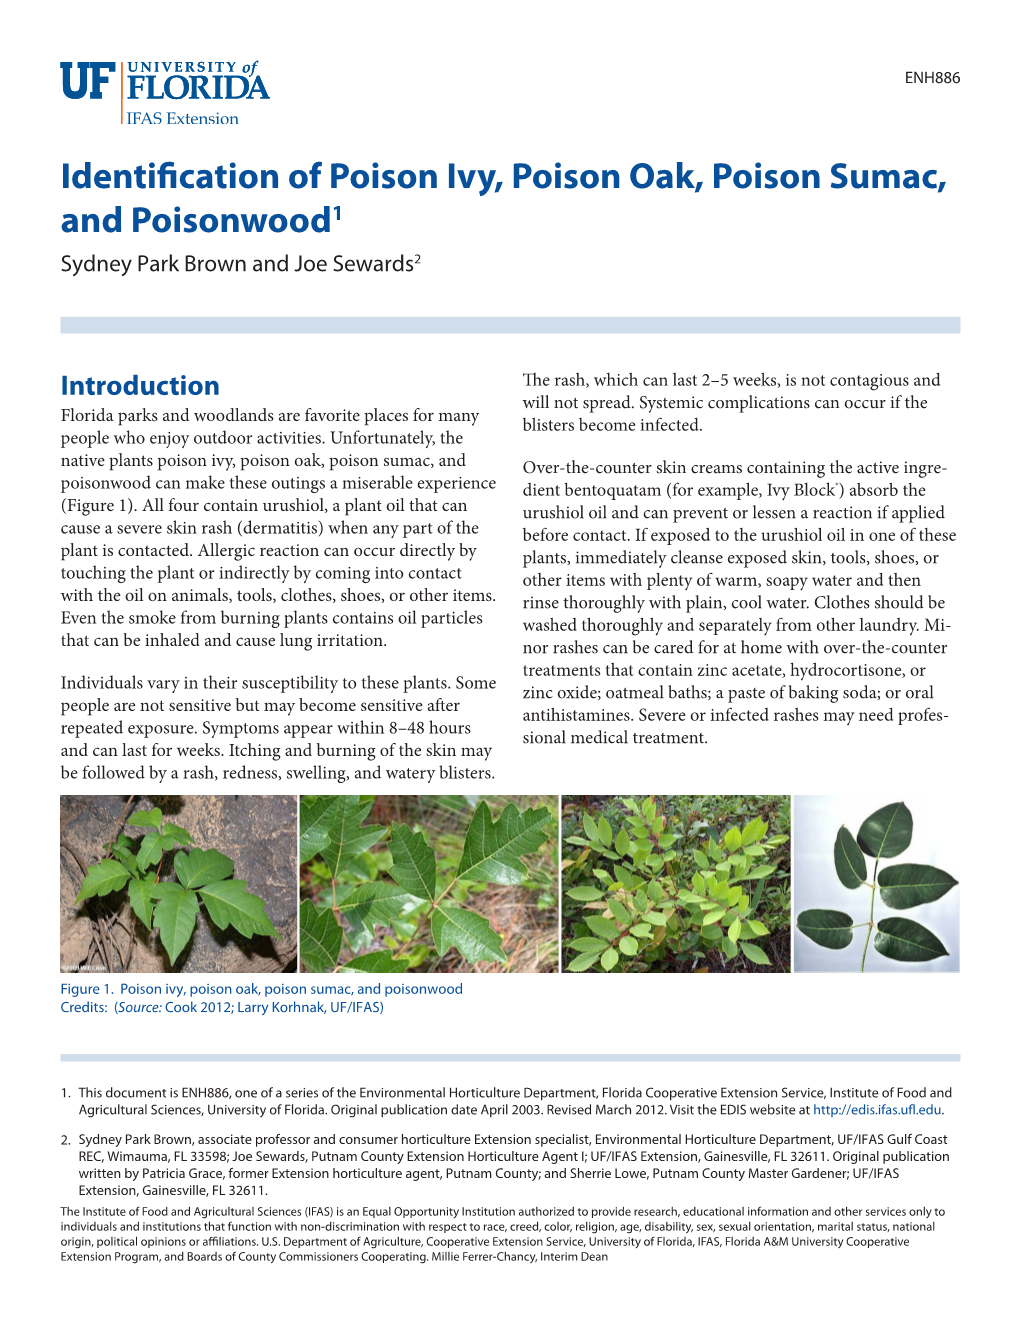 Identification of Poison Ivy, Poison Oak, Poison Sumac, and Poisonwood1 Sydney Park Brown and Joe Sewards2